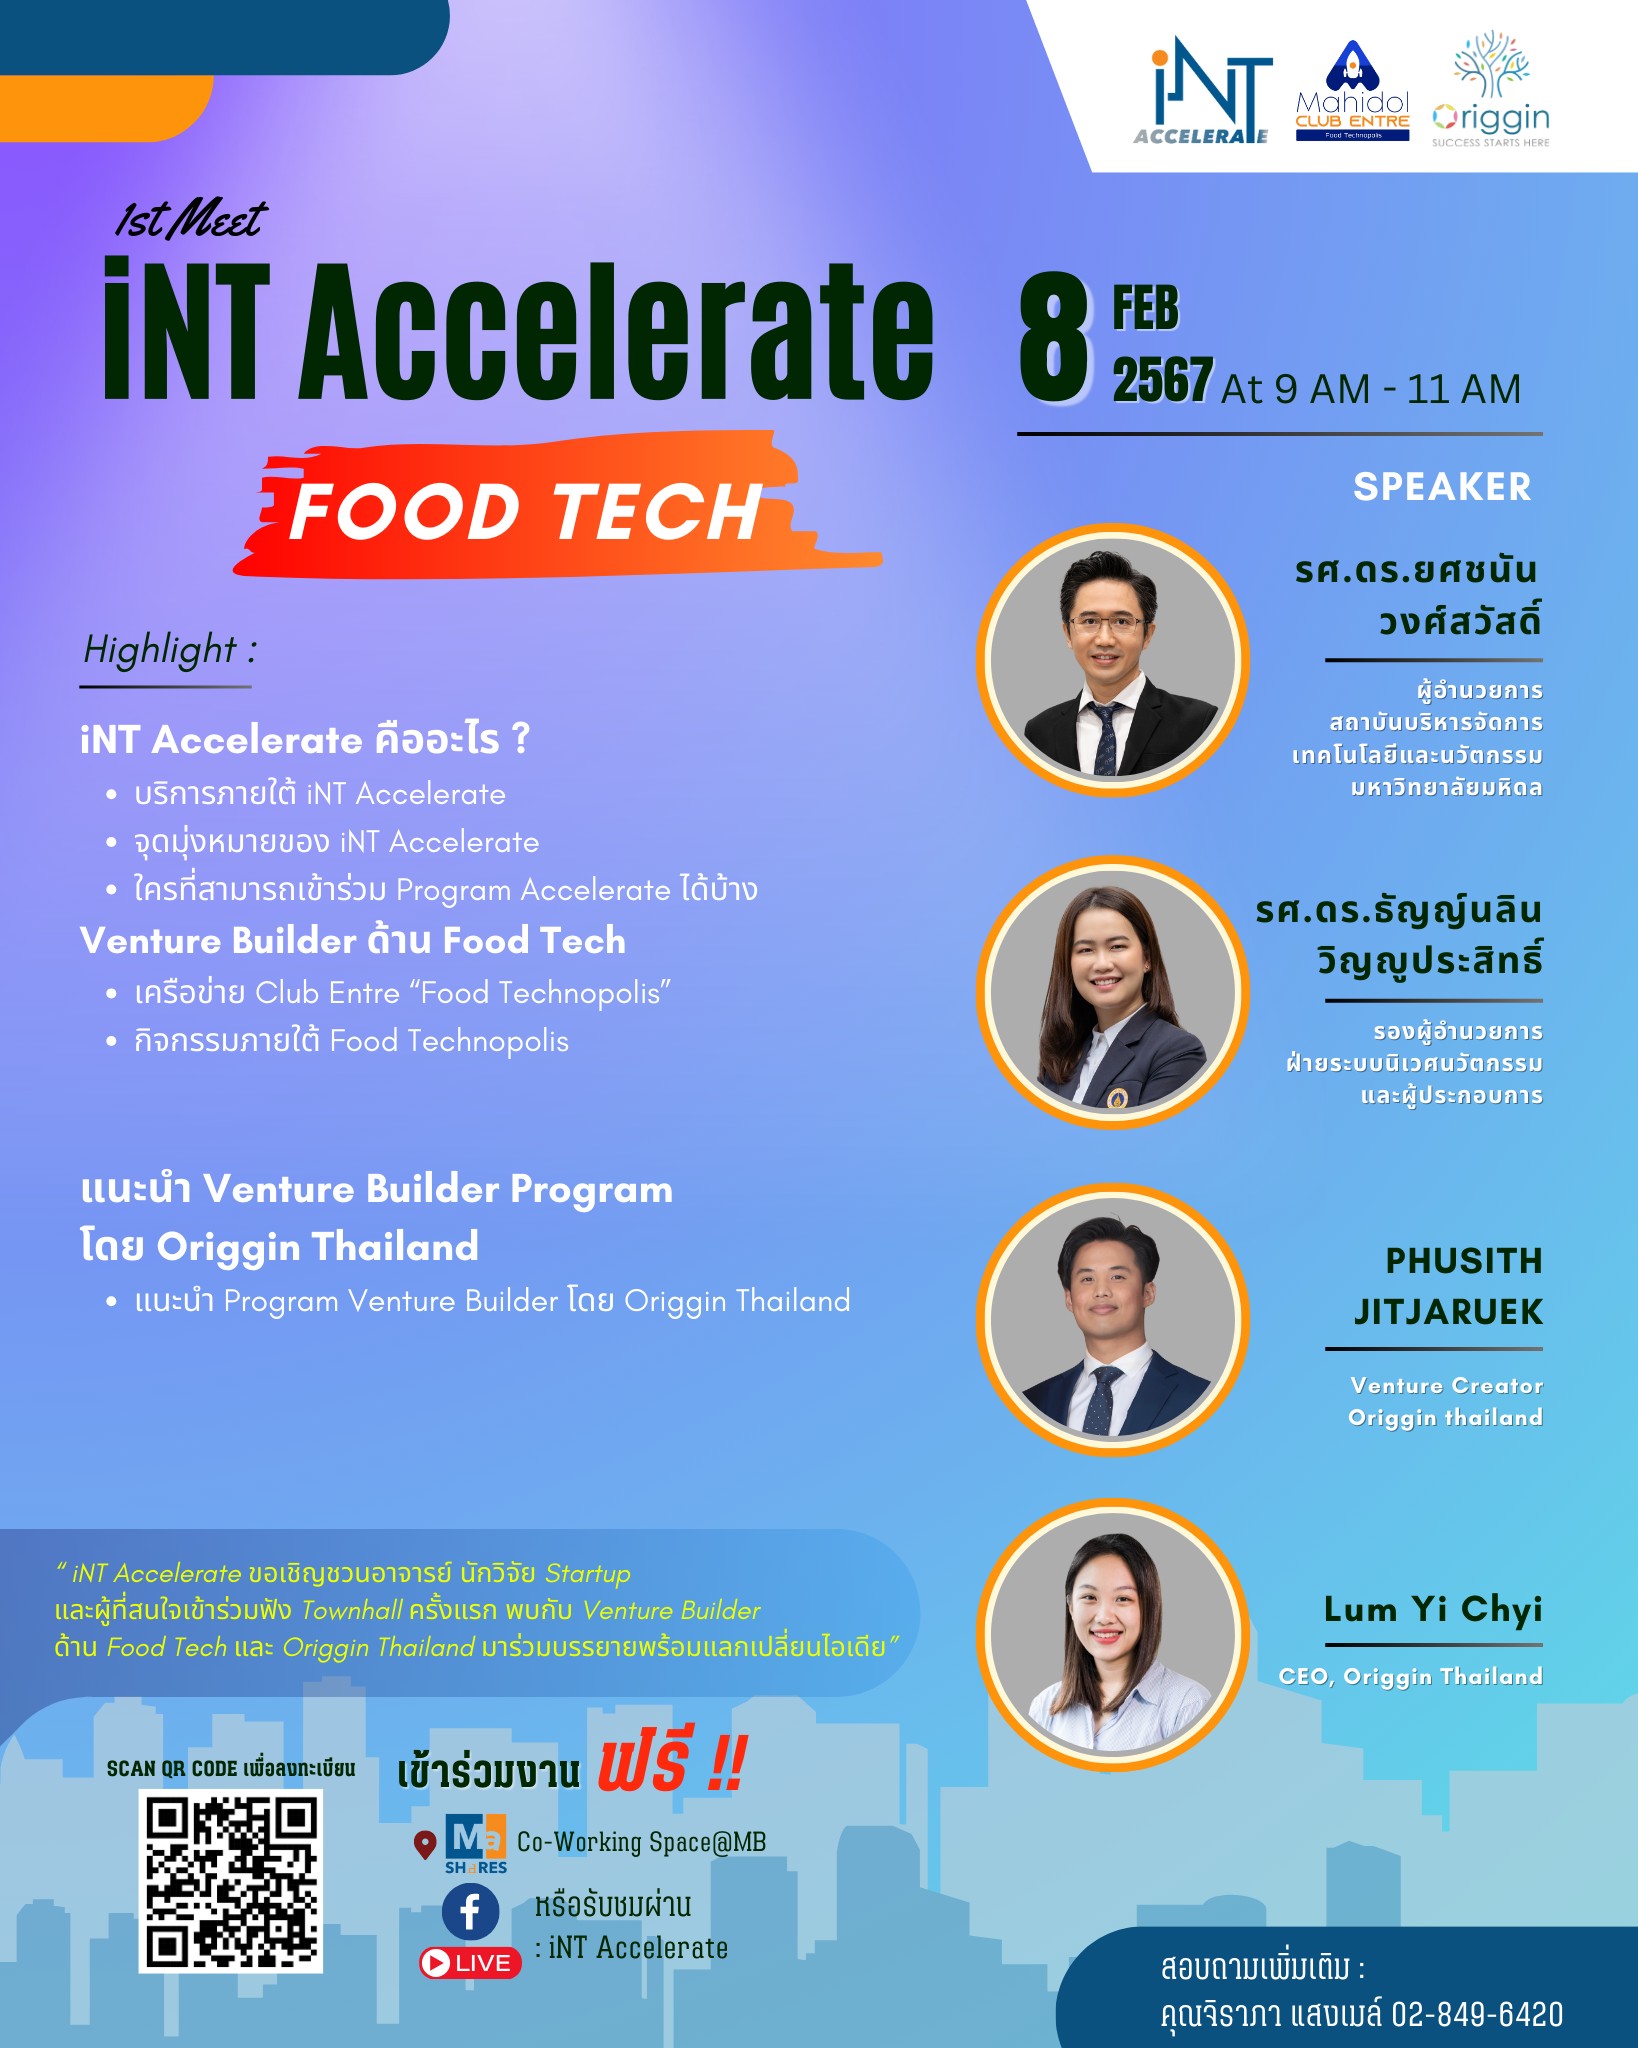 iNT Accelerate โดยการบริหารจัดการของสถาบันบริหารจัดการเทคโนโลยีและนวัตกรรม (iNT) มหาวิทยาลัยมหิดล ขอเชิญชวนอาจารย์ นักวิจัย Startup และผู้ที่สนใจเข้าร่วมกิจกรรม "1st Meet iNT Accelerate" ในหัวข้อ Food Tech